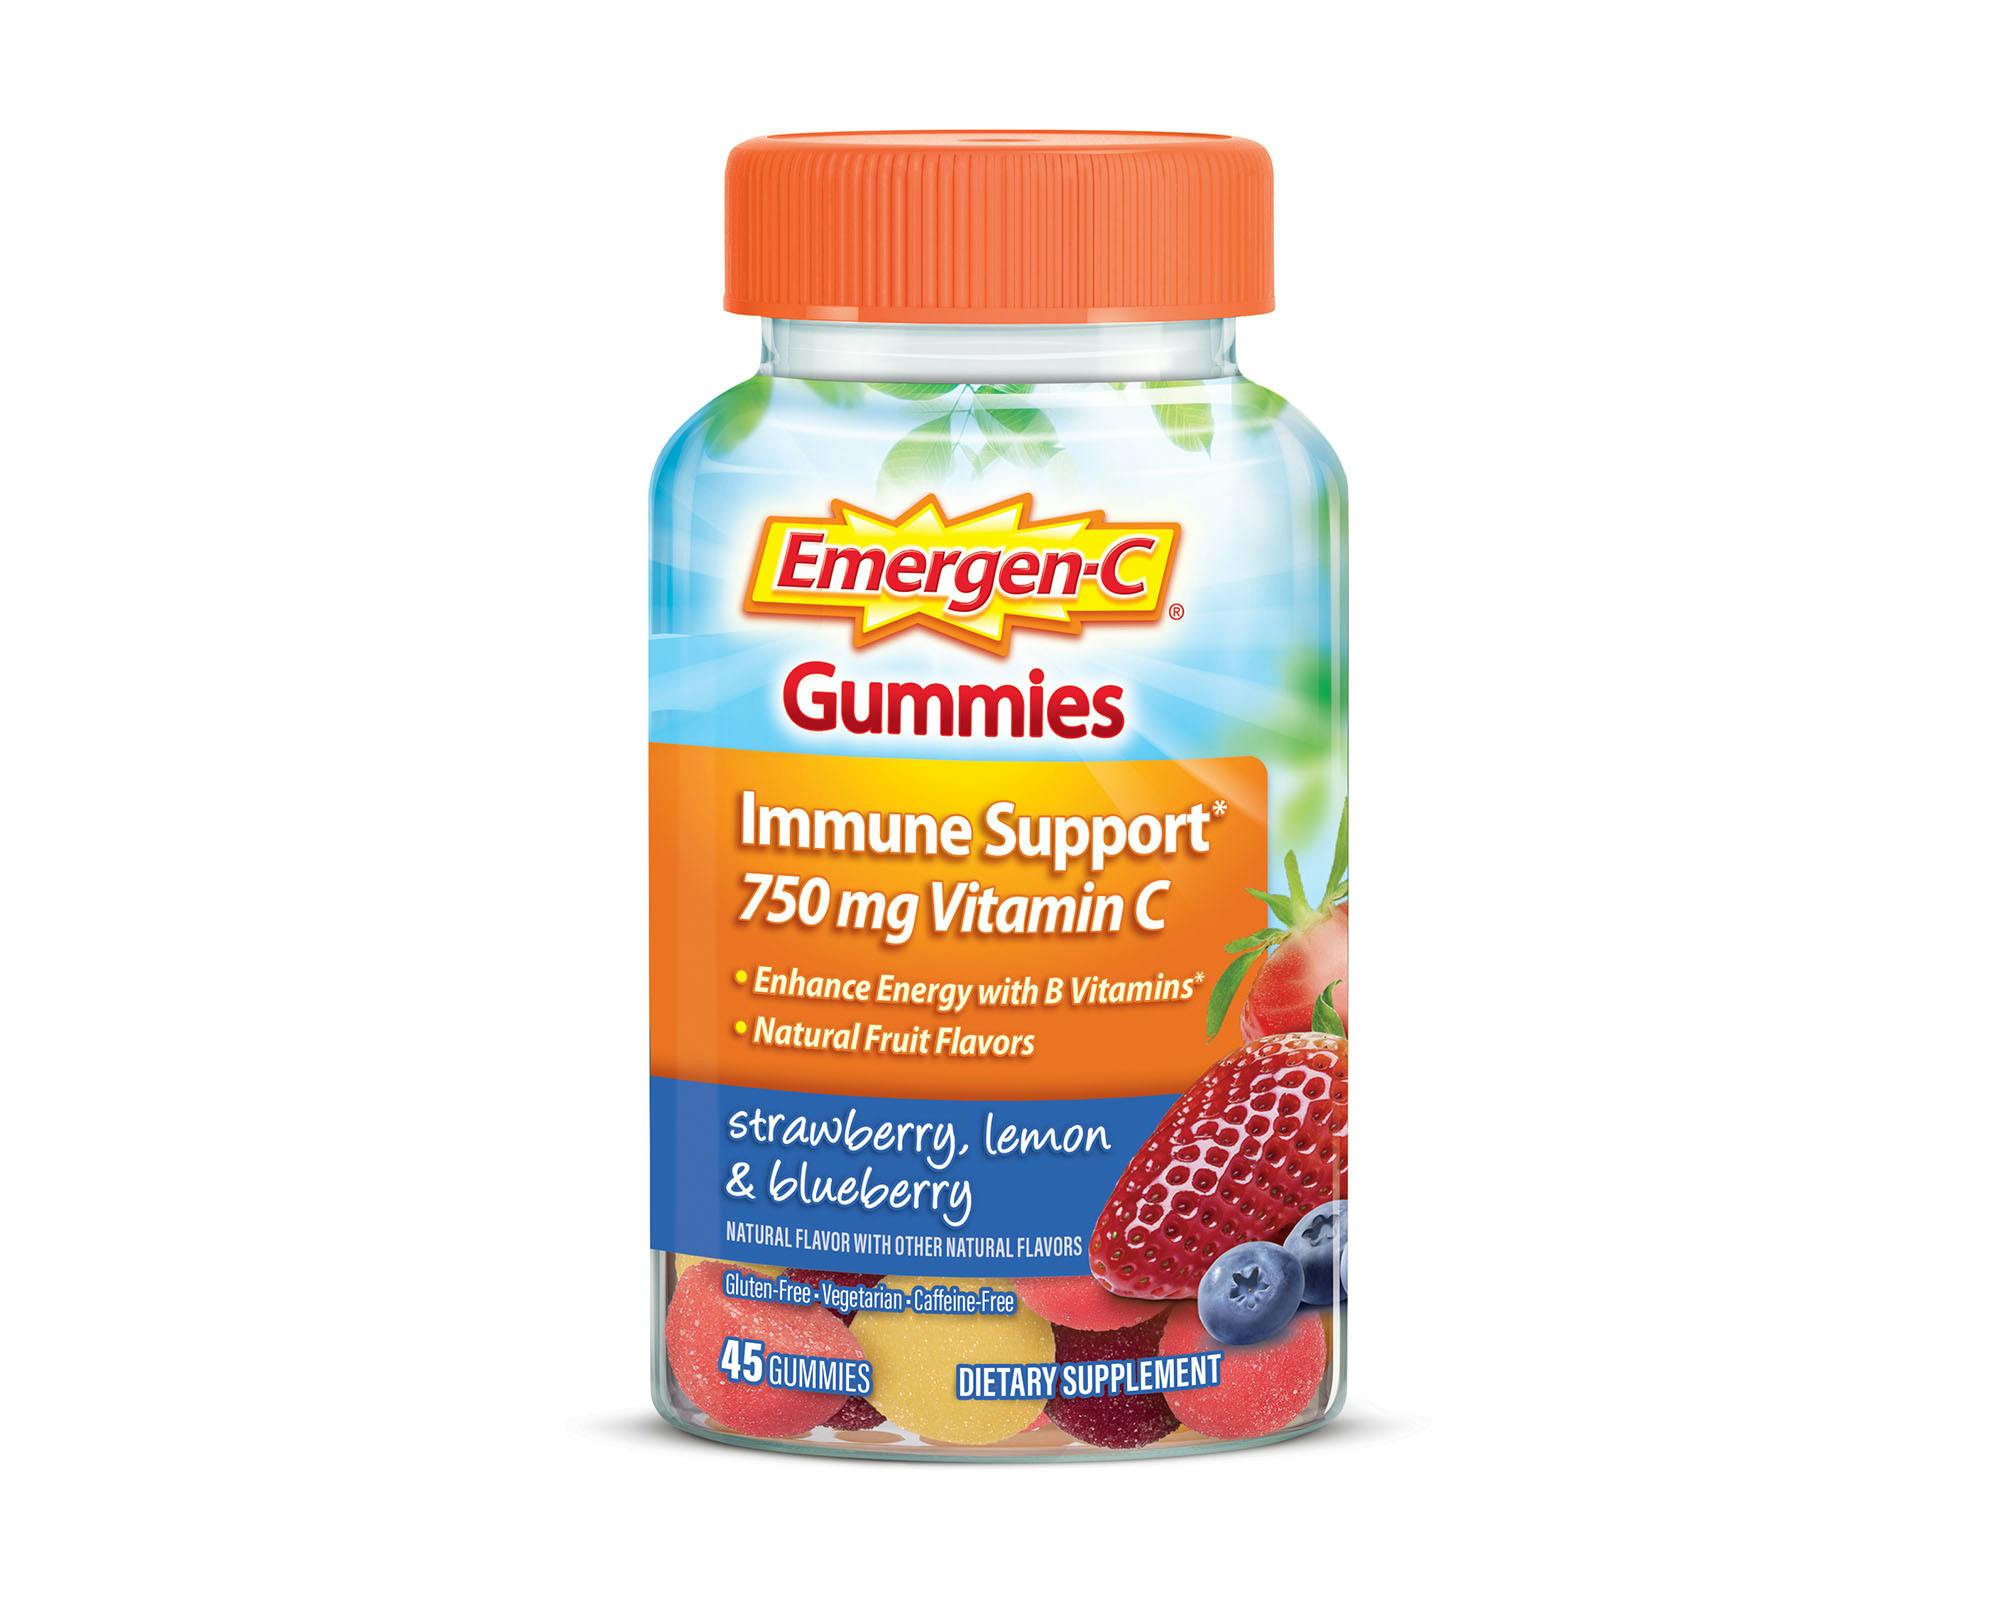 Strawberry, Lemon & Blueberry Immune Support Gummies bottle